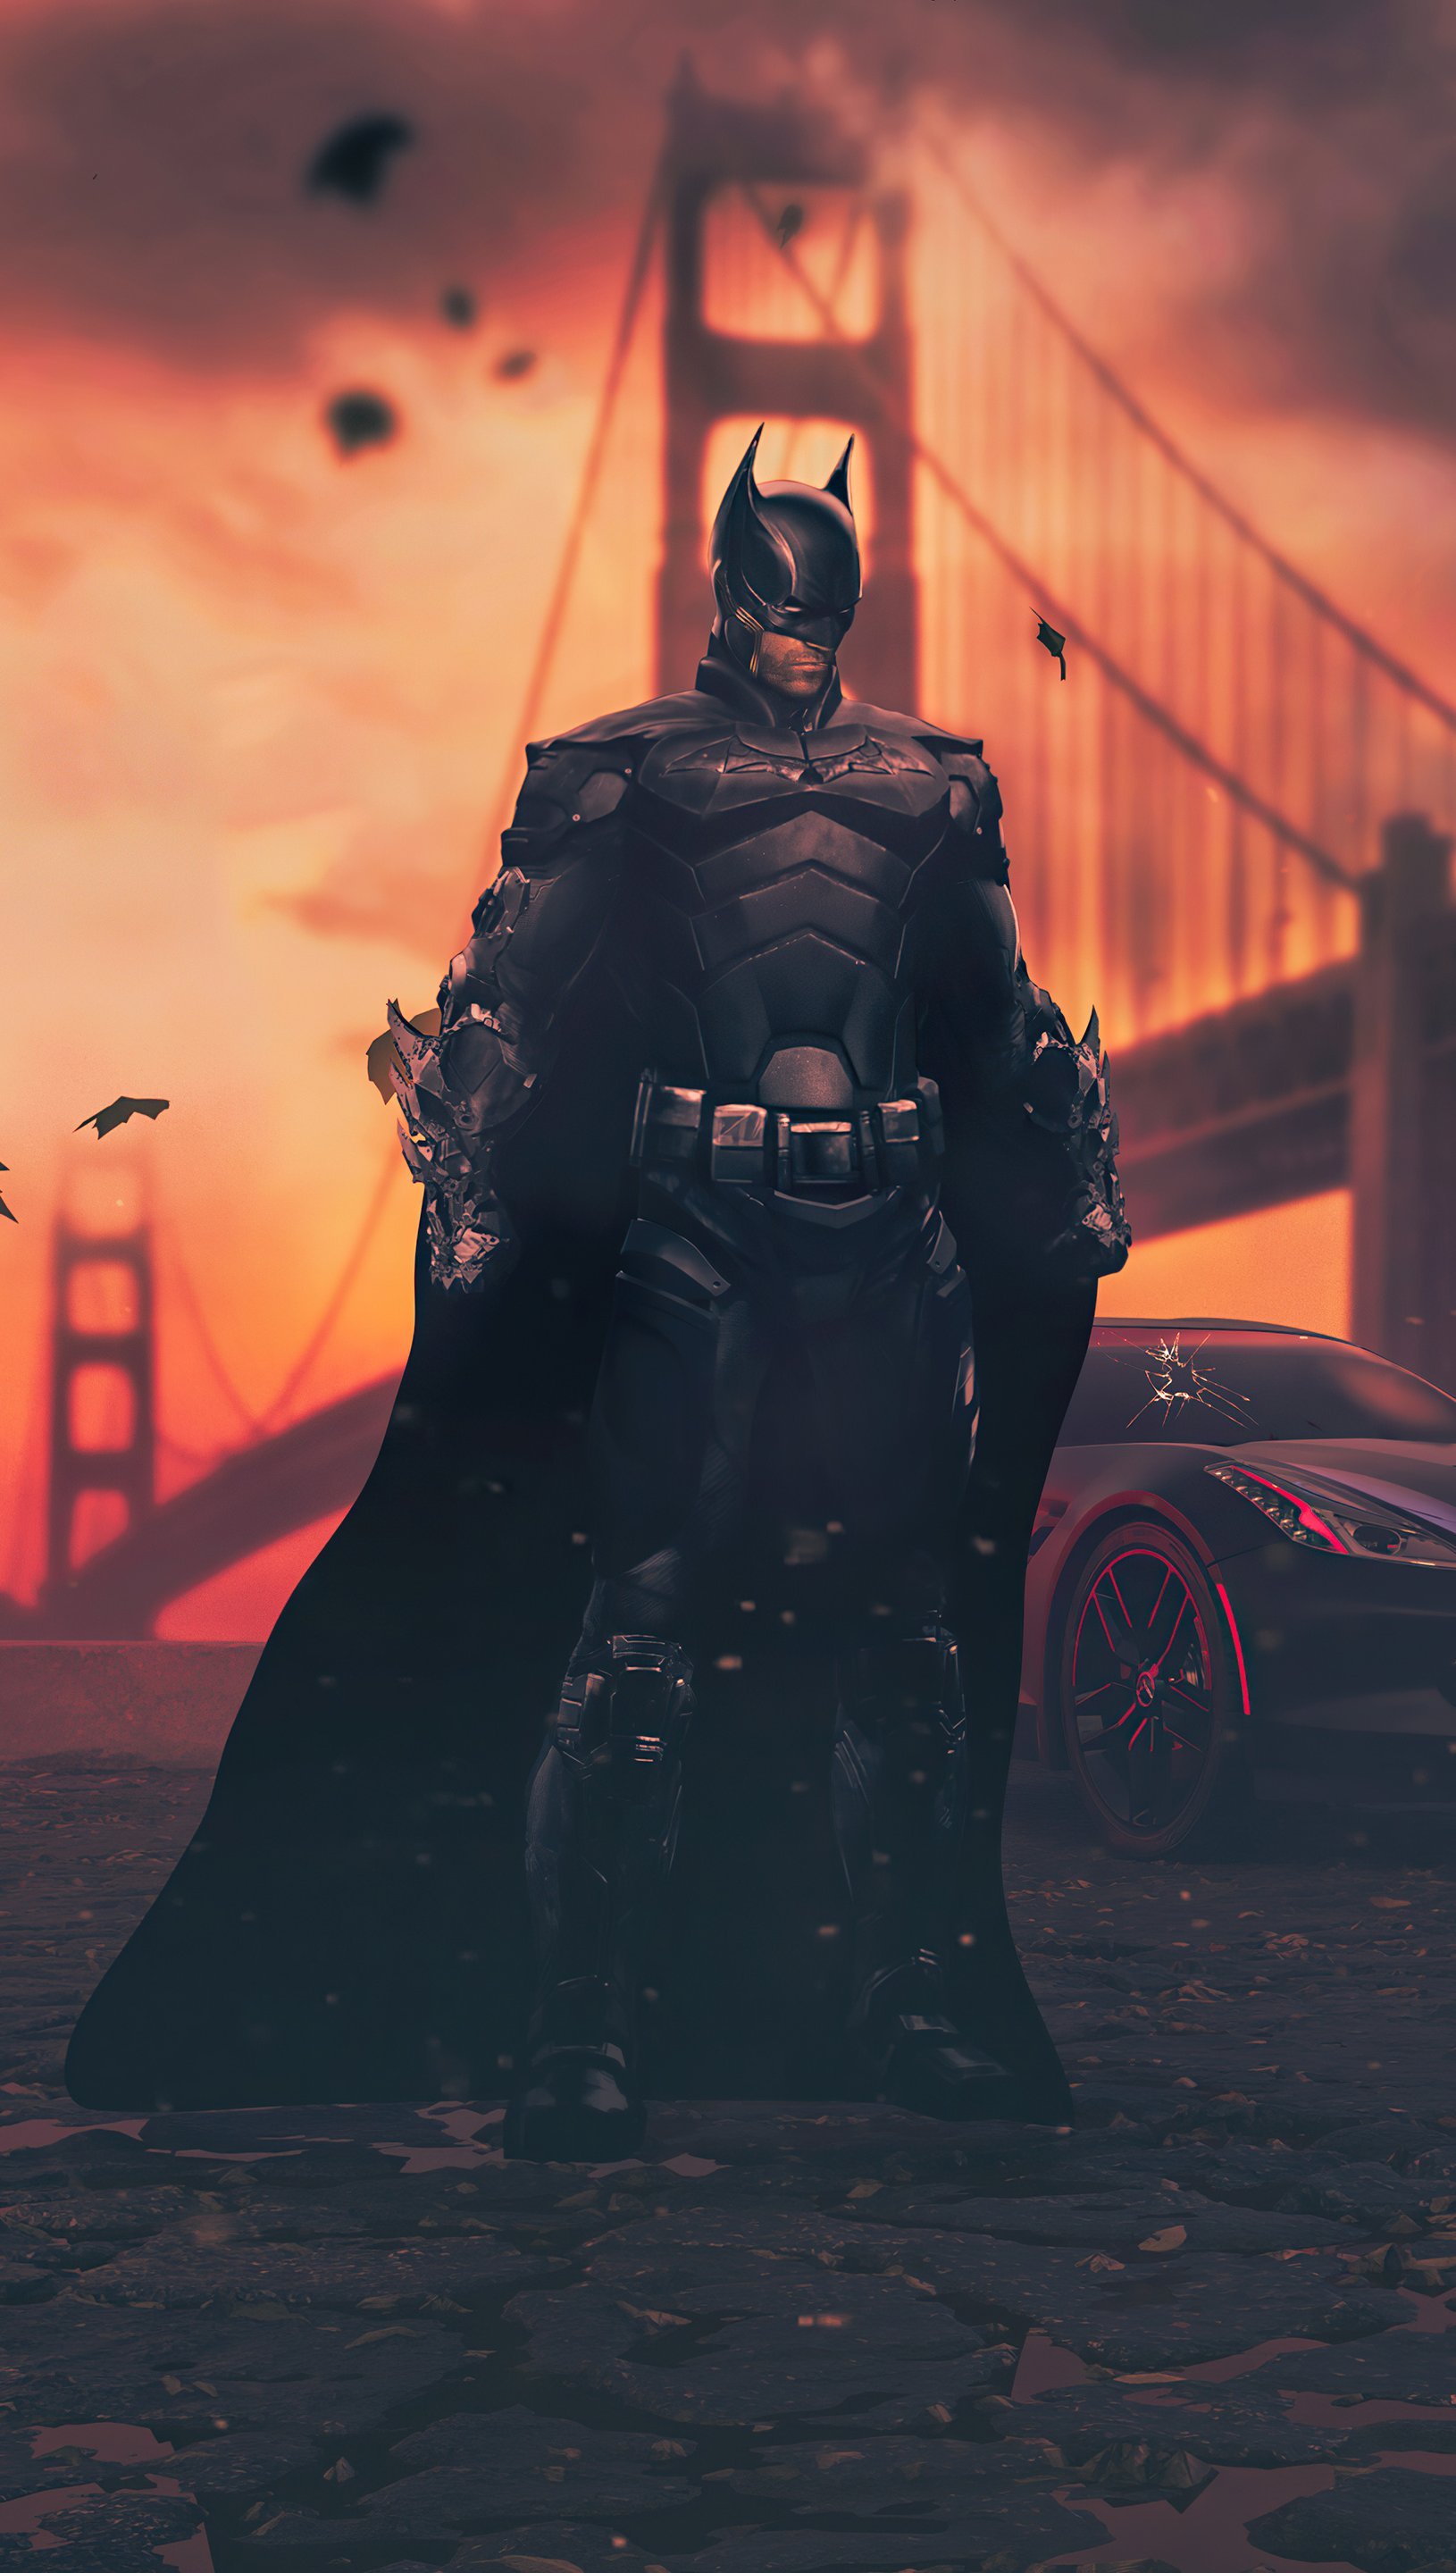 batman the dark knight wallpaper 1080p